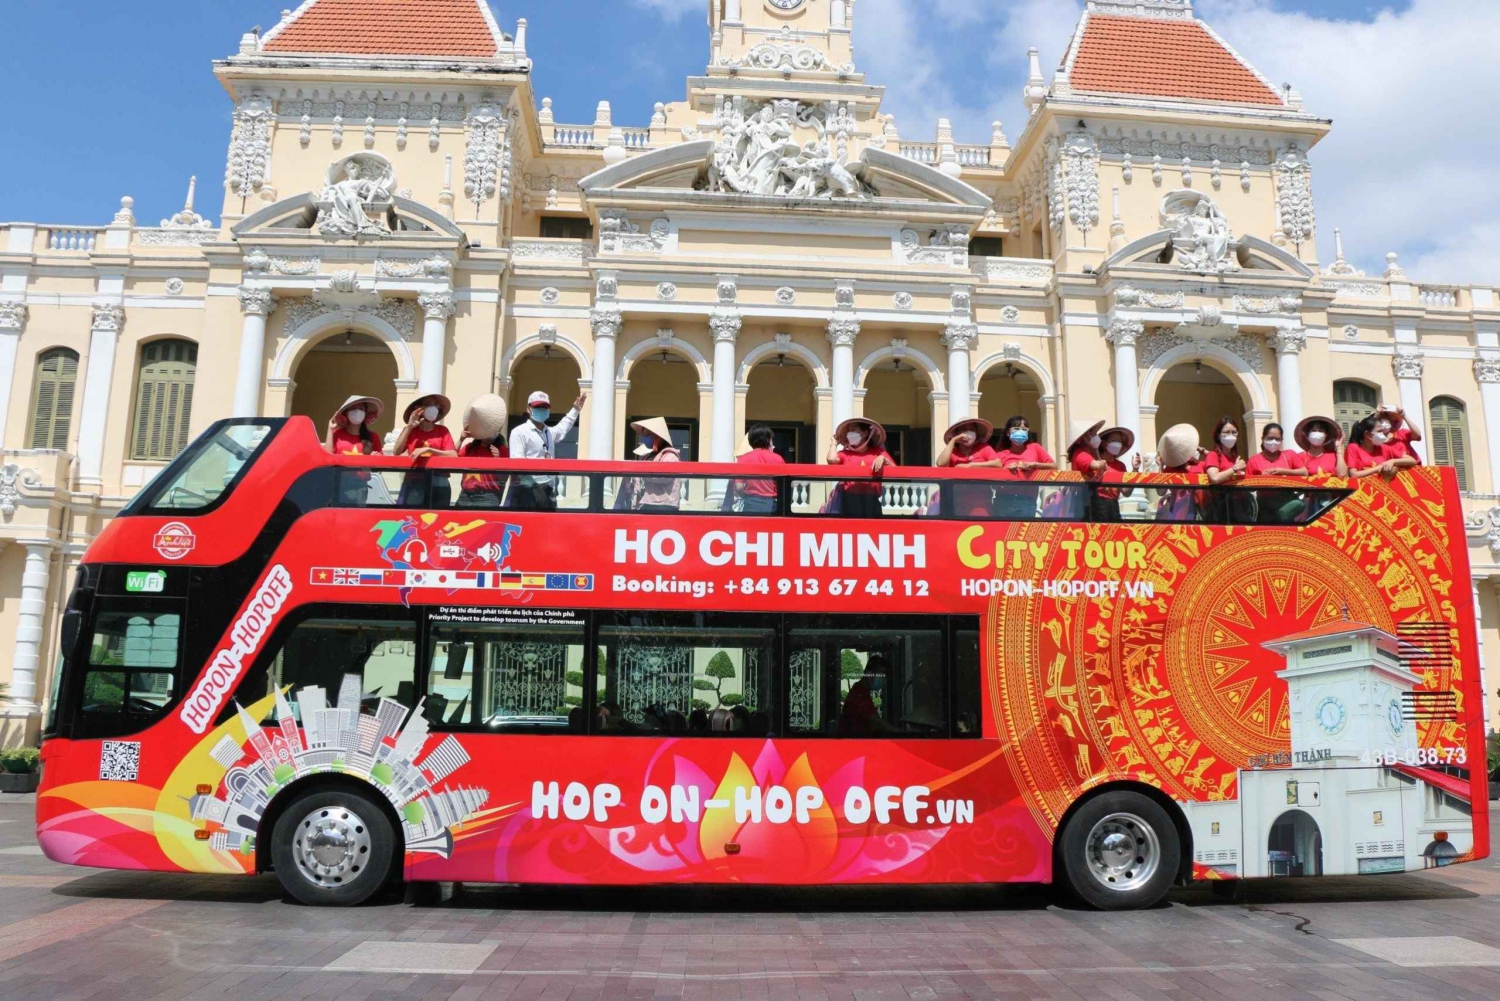 Ho Chi Minh-staden: 4 timmars Hop-on Hop-off busstur